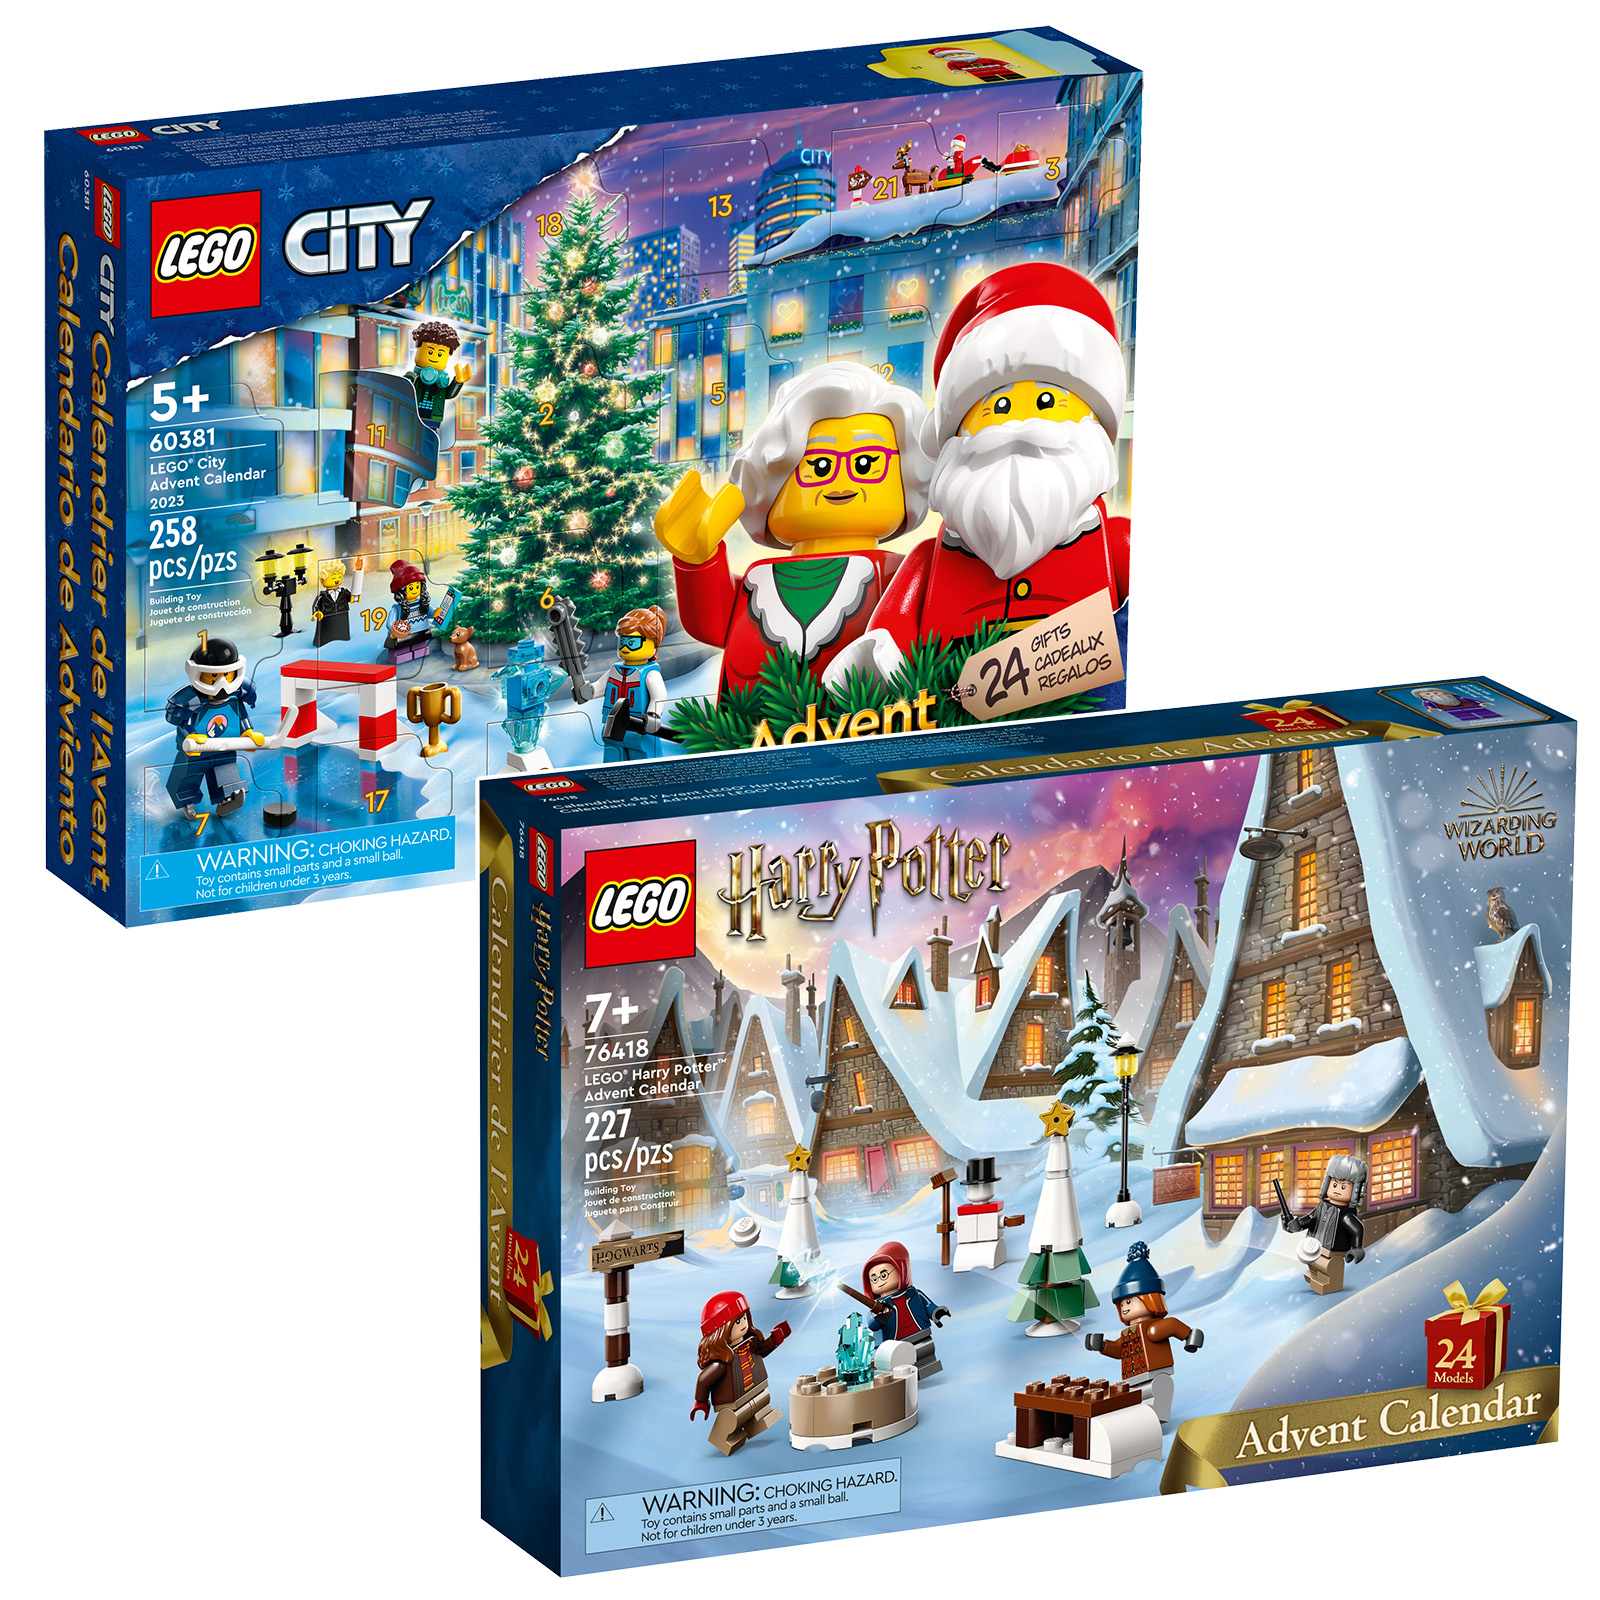 LEGO 76418 Harry Potter adventskalender och LEGO 60381 CITY